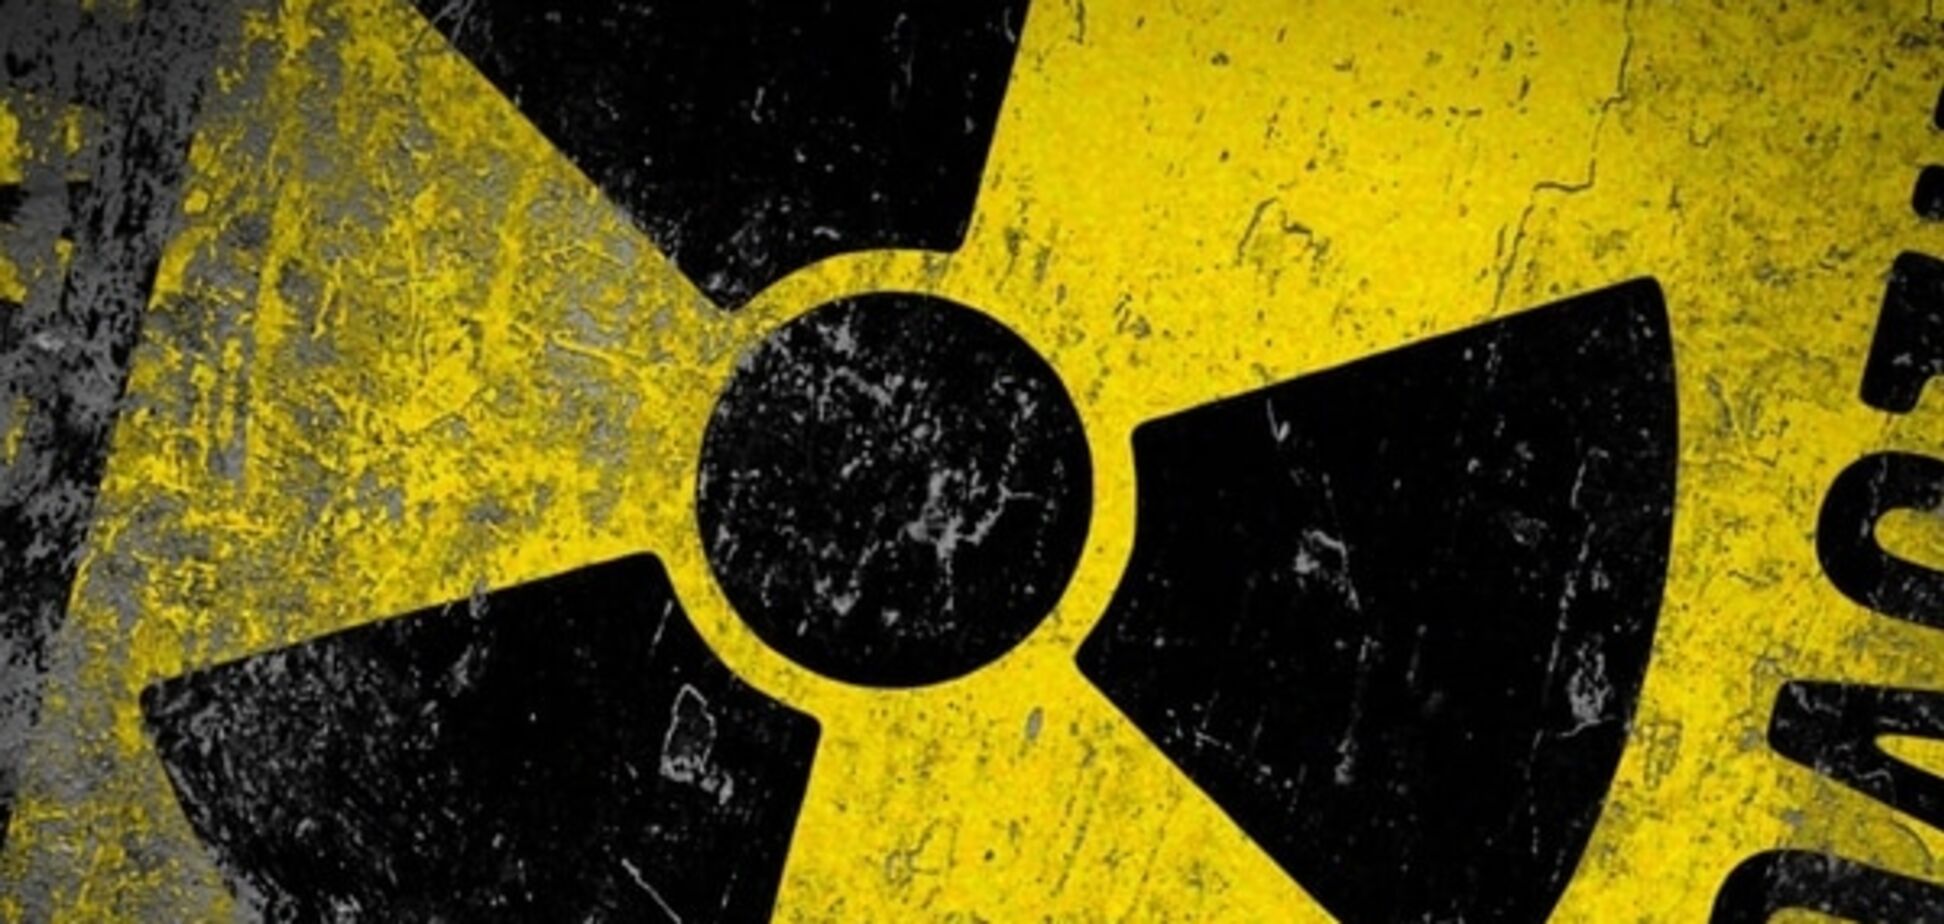 Ученые открыли частицу из чистой ядерной силы, опасную для человека